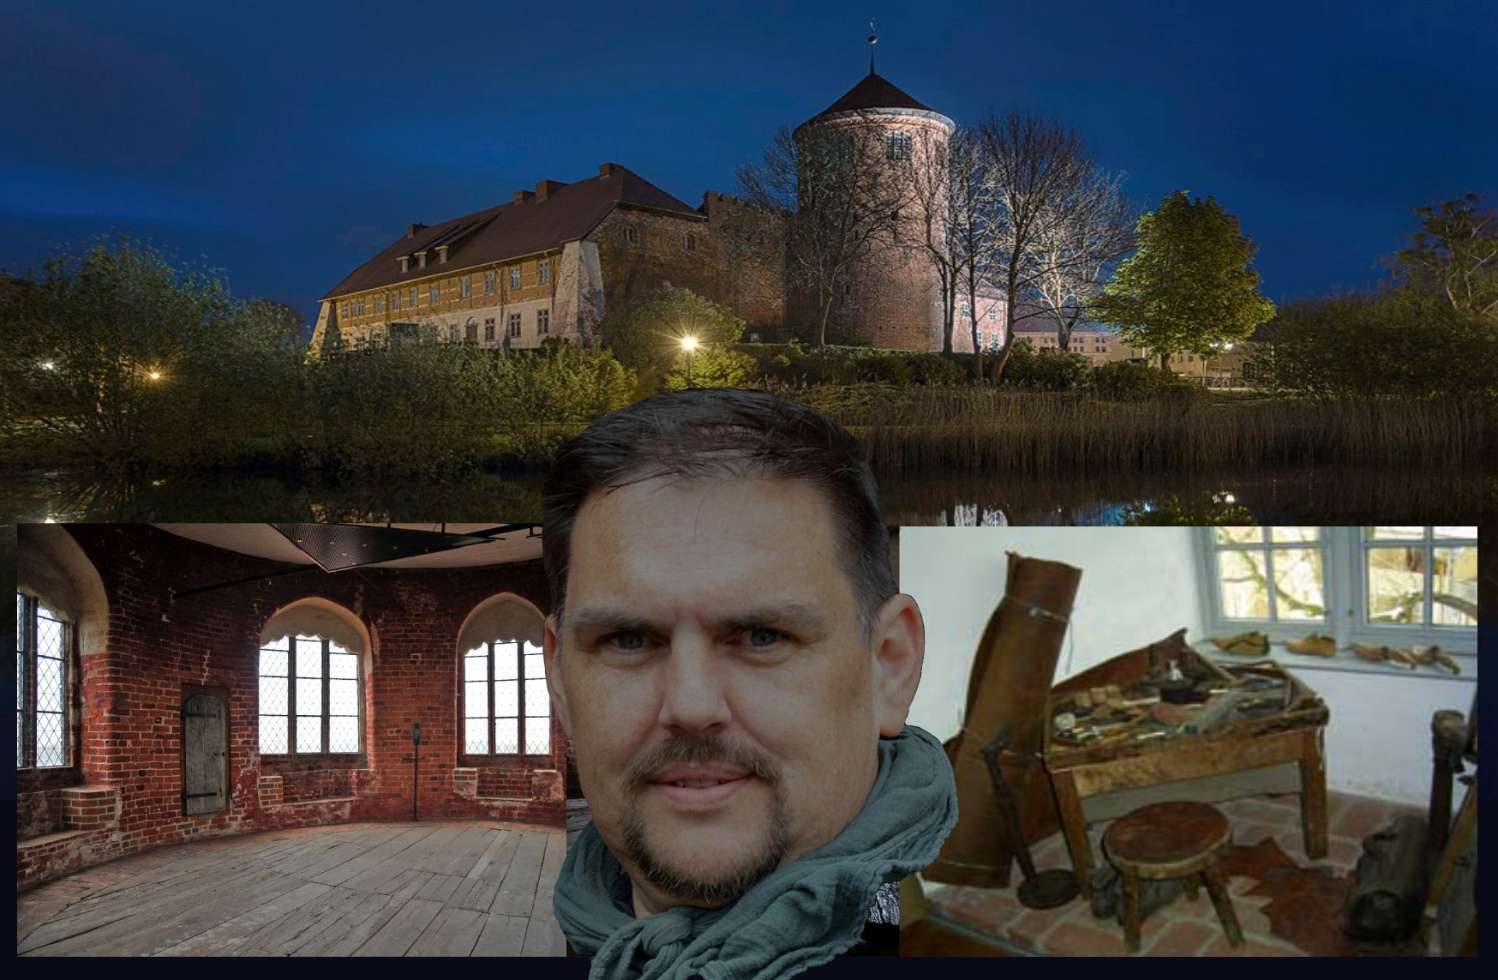 Musikalisch: Burgführung Neustadt-Glewe mit Thielius dem Barden